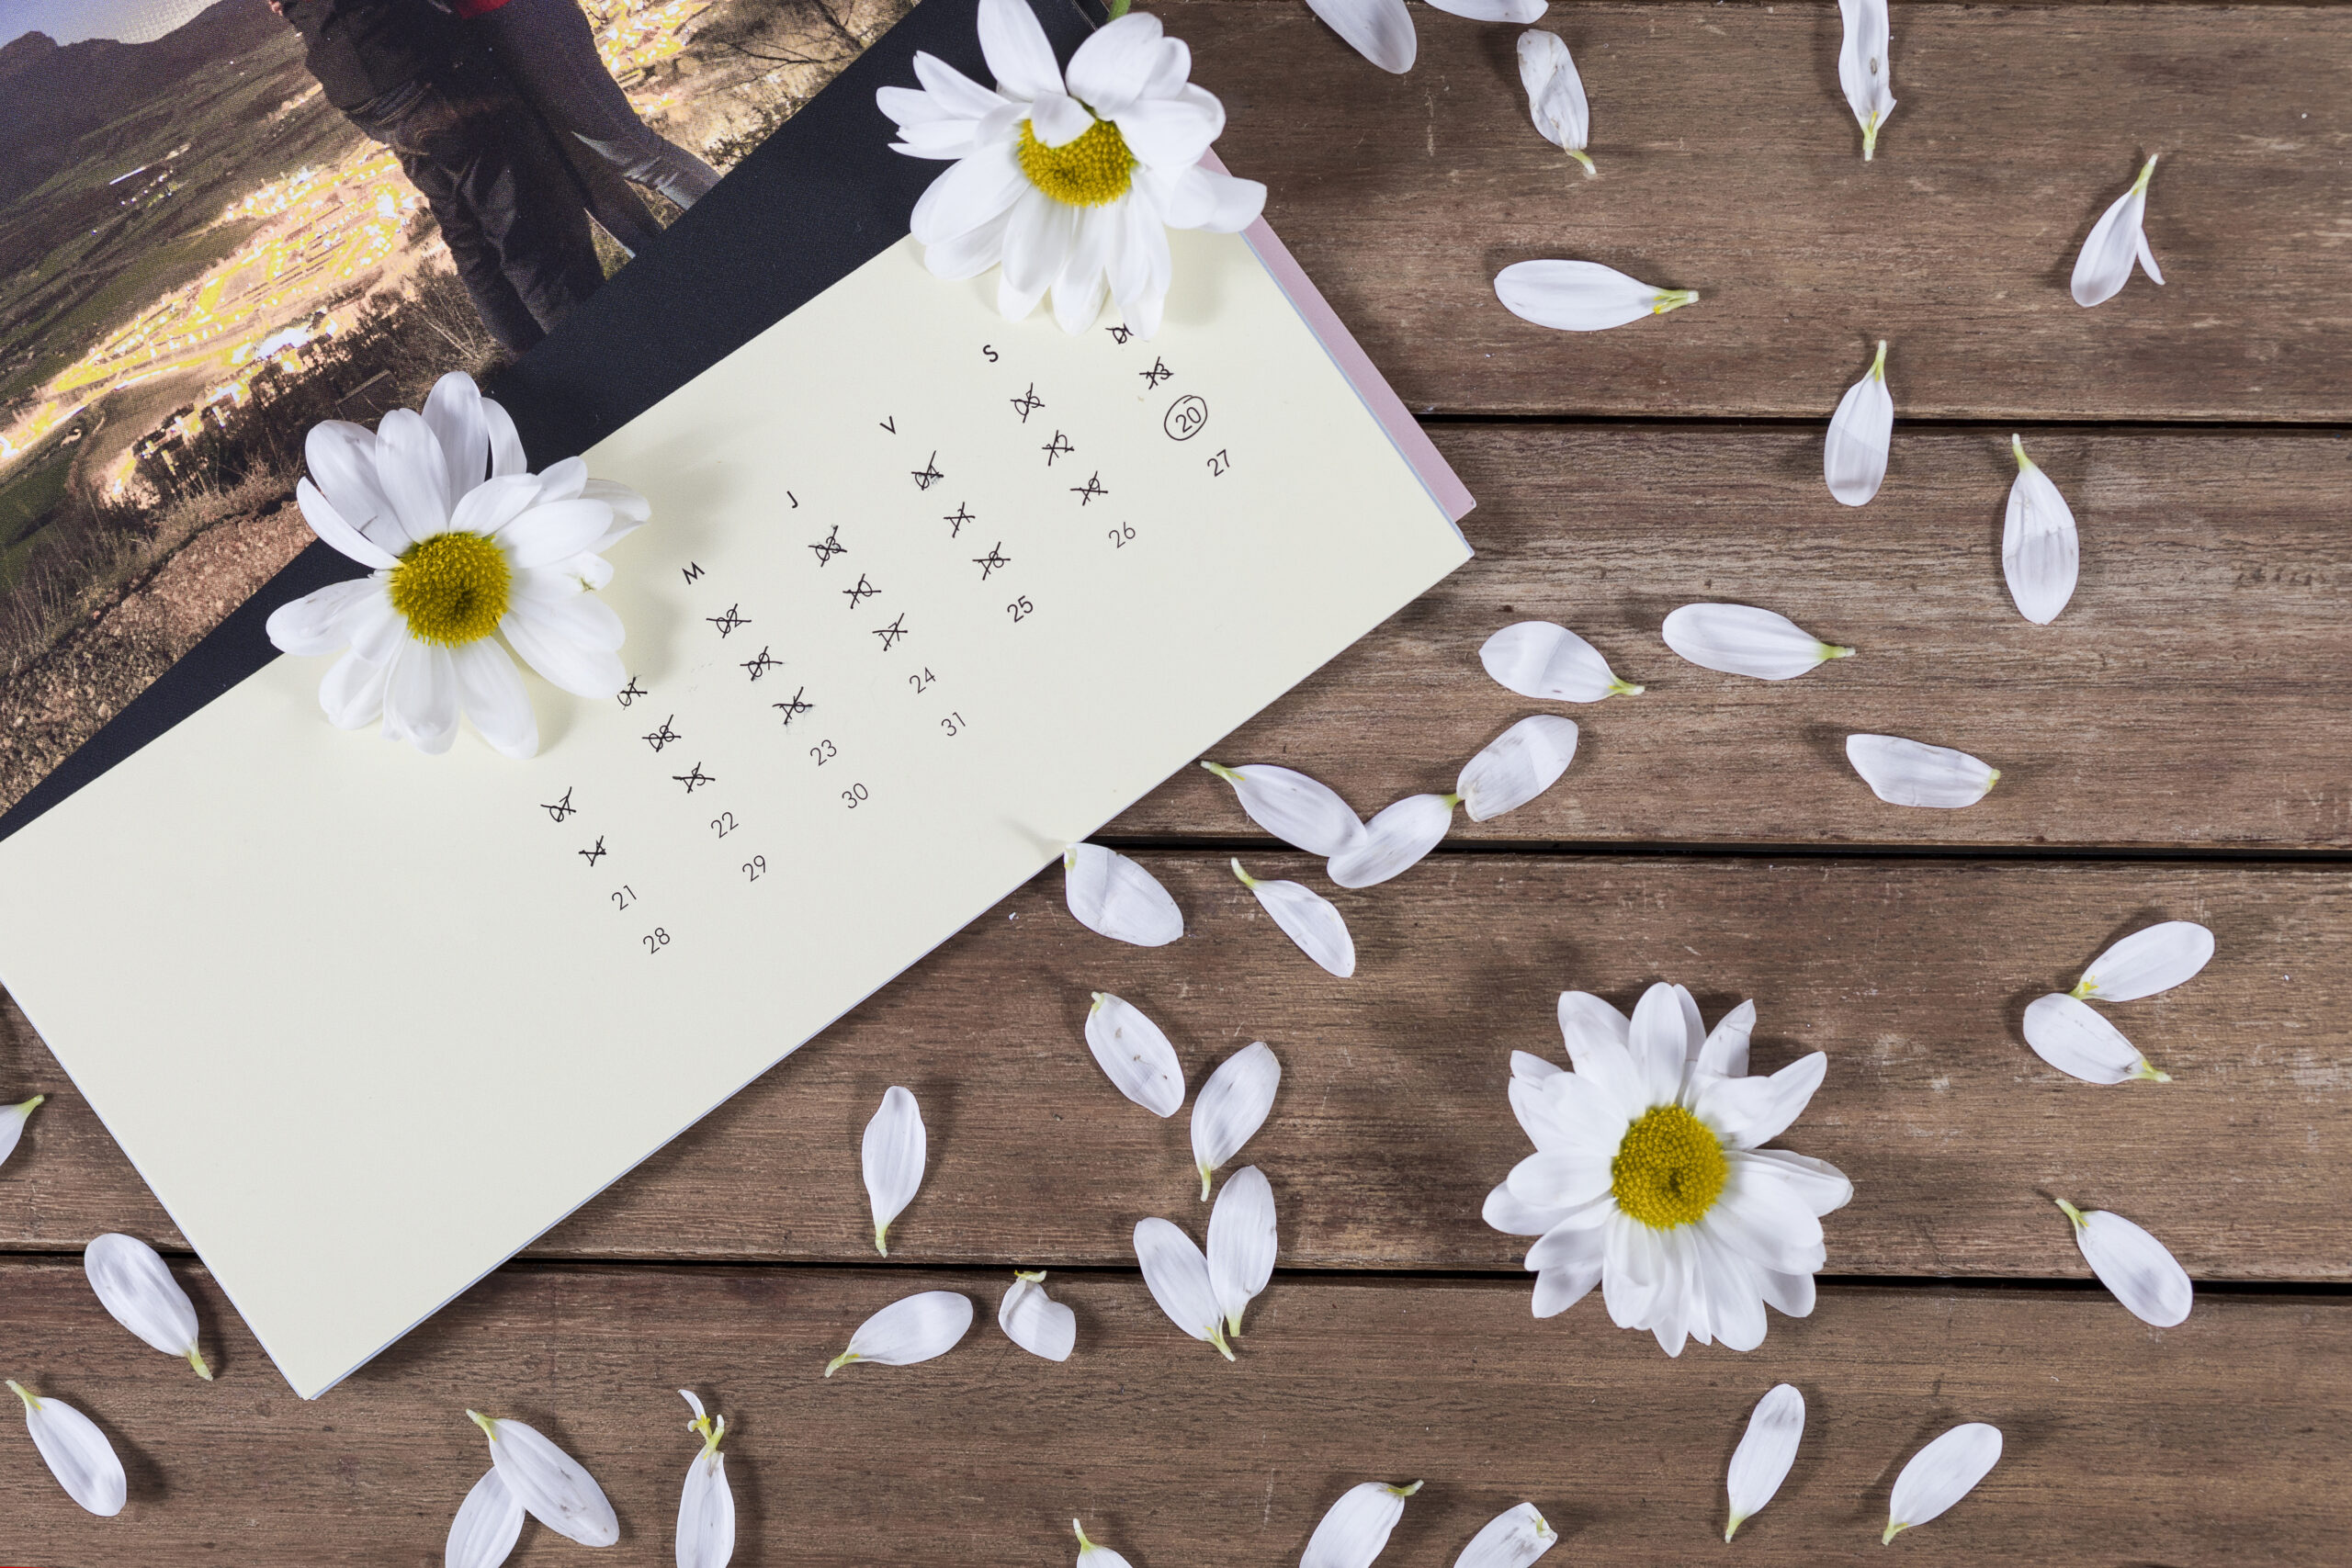 Kartka z kalendarza na drewnianym stole, w otoczeniu białych kwiatów